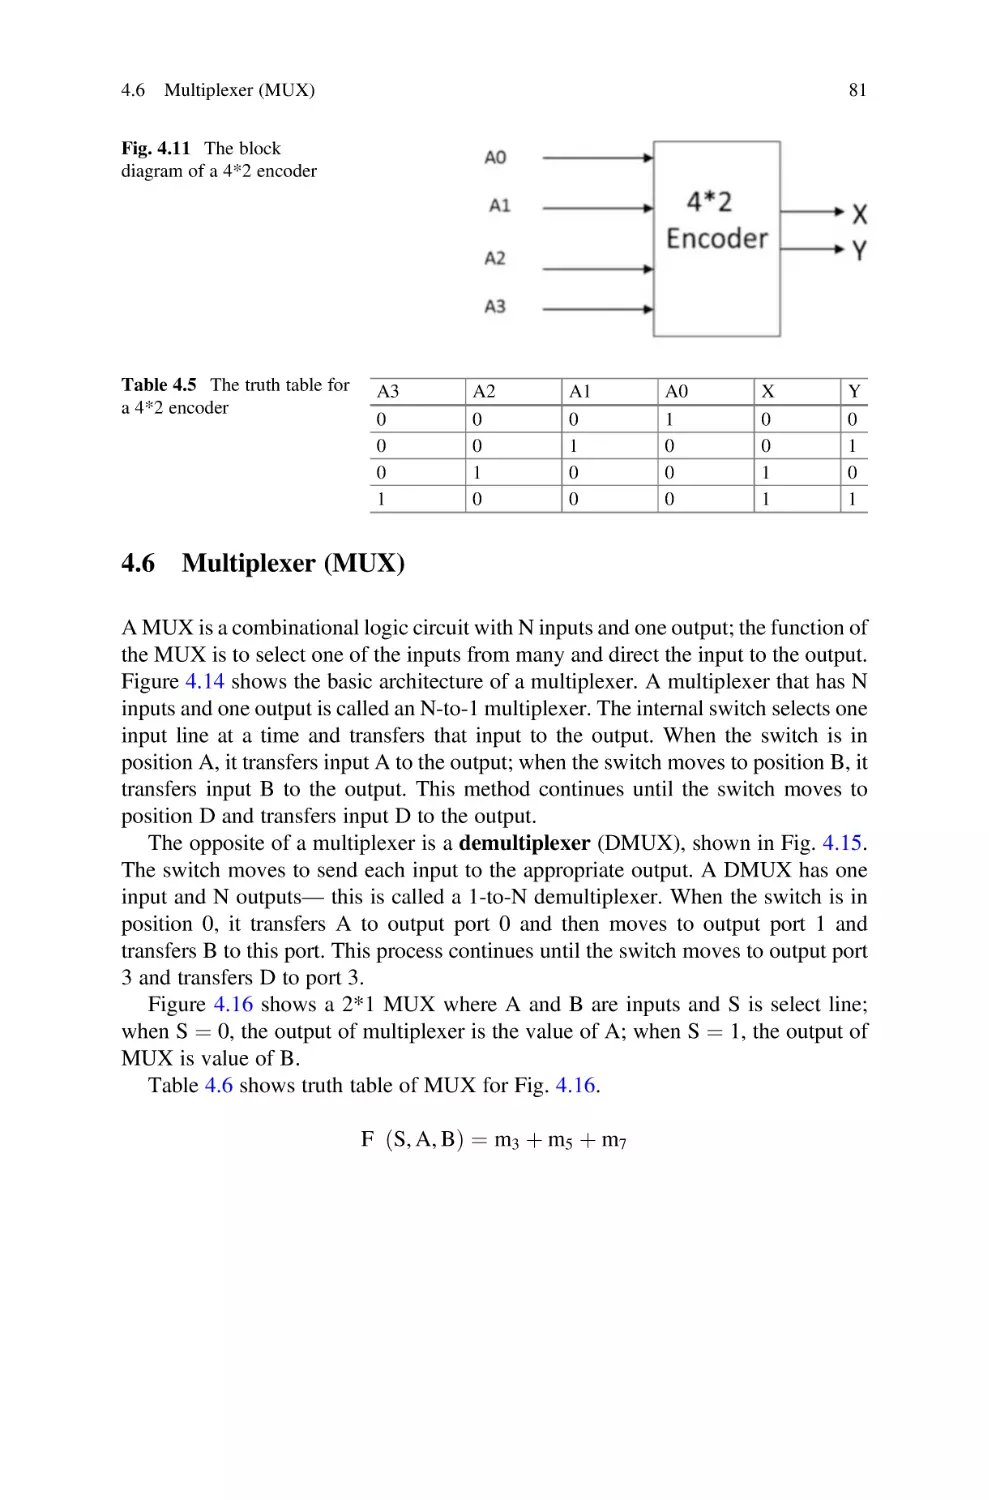 4.6 Multiplexer (MUX)